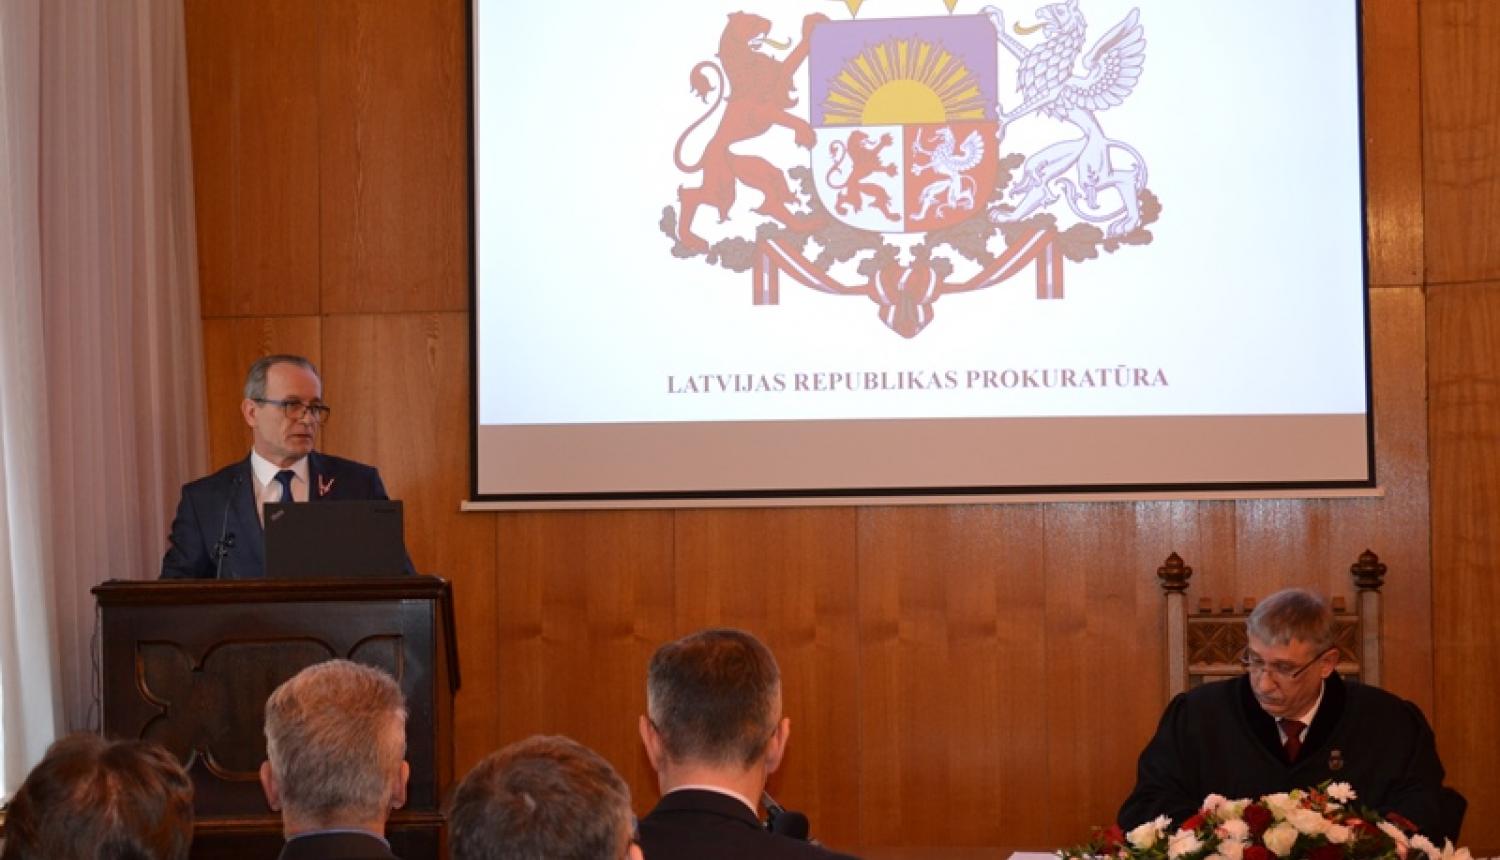 Tieslietu ministrs atzinīgi vērtē prokuratūras ieguldījumu Latvijas iestāšanās procesā OECD un tiesu teritoriālās reformas īstenošanā